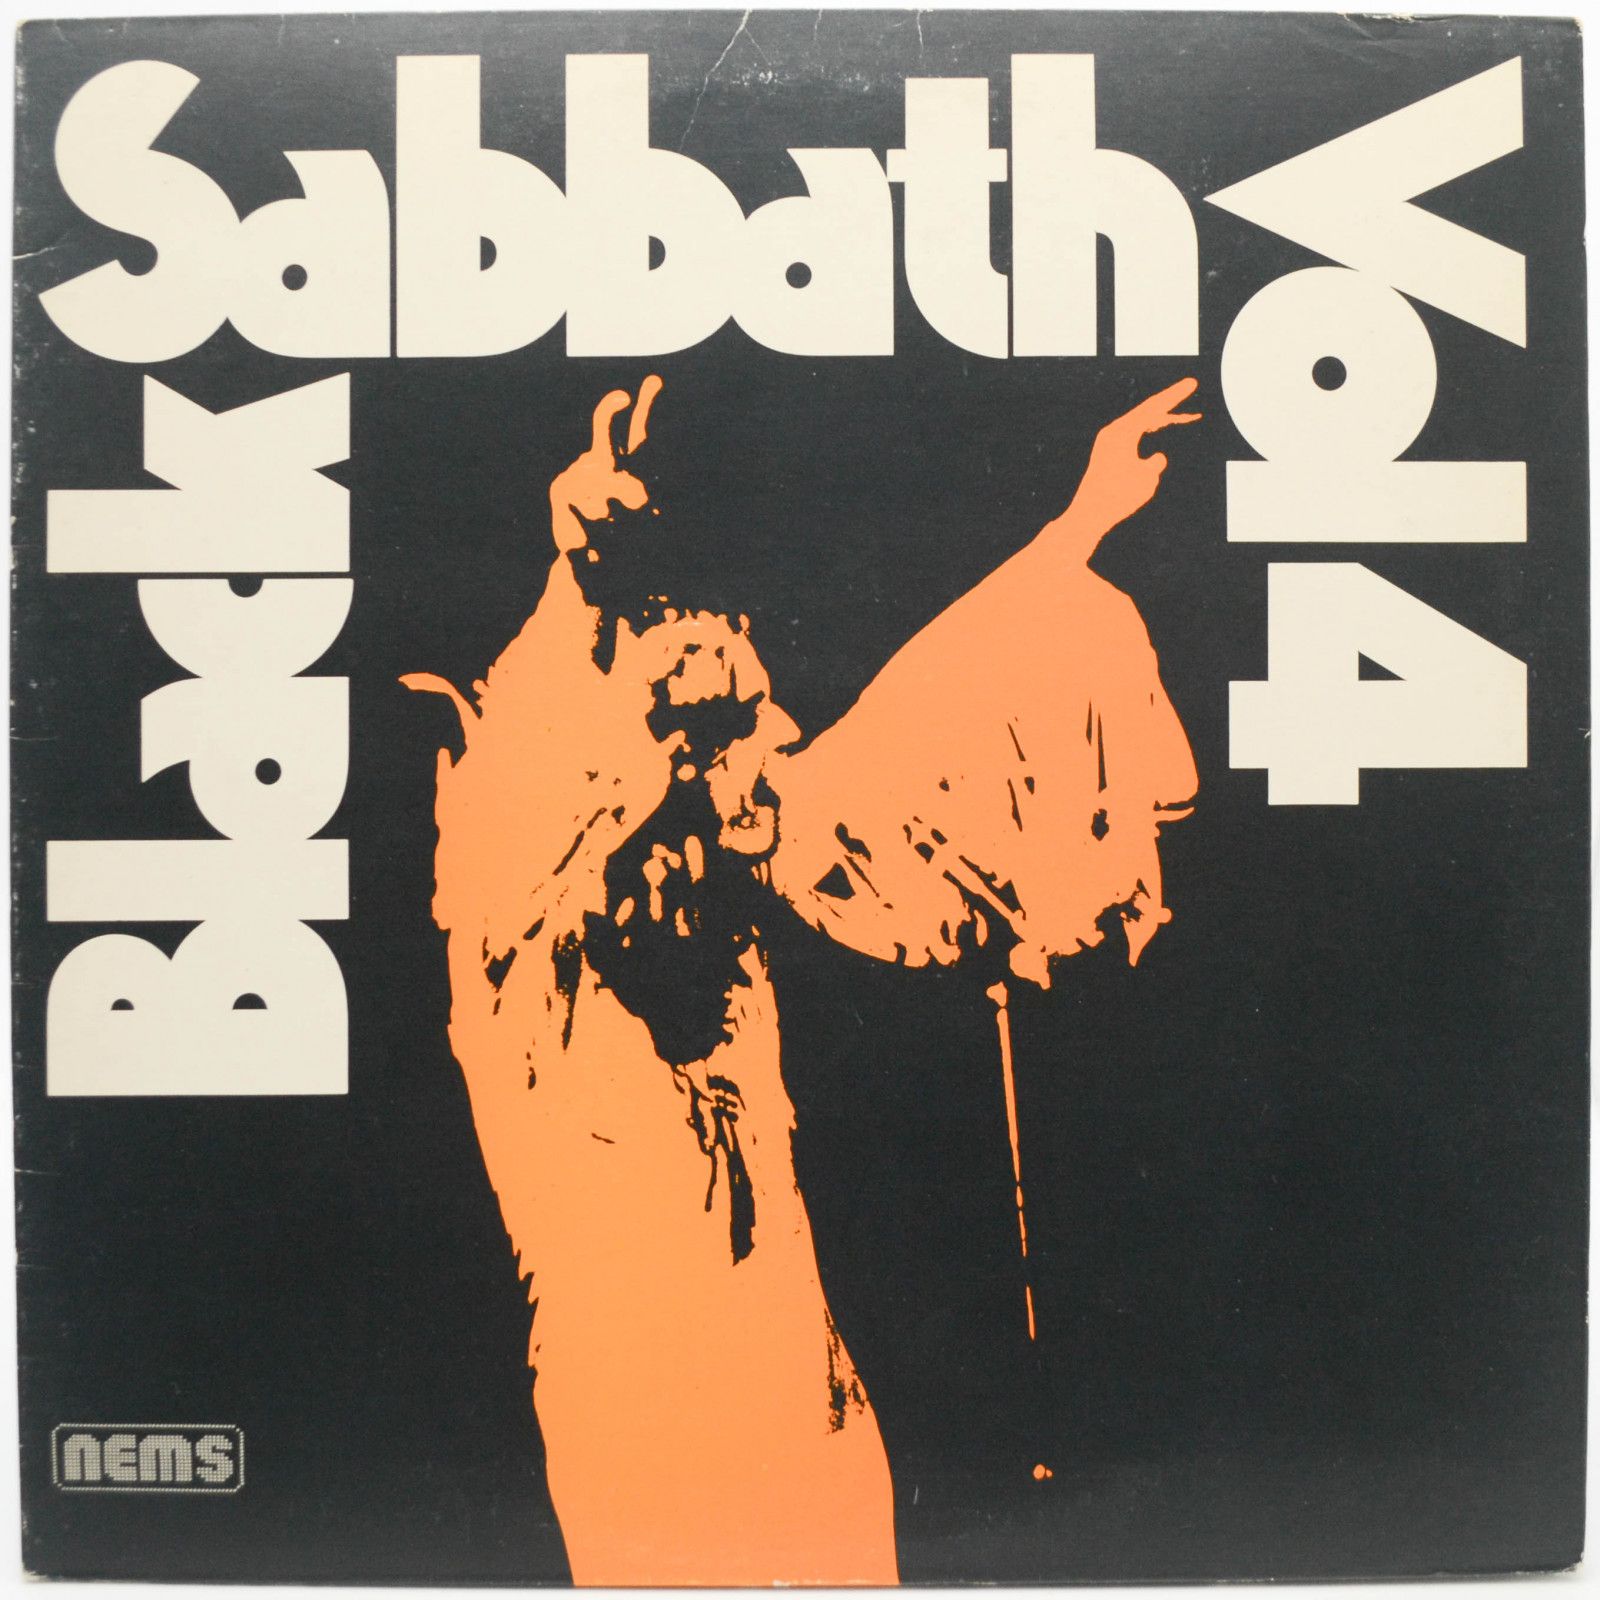 Black Sabbath — Black Sabbath Vol 4 (UK), 1972